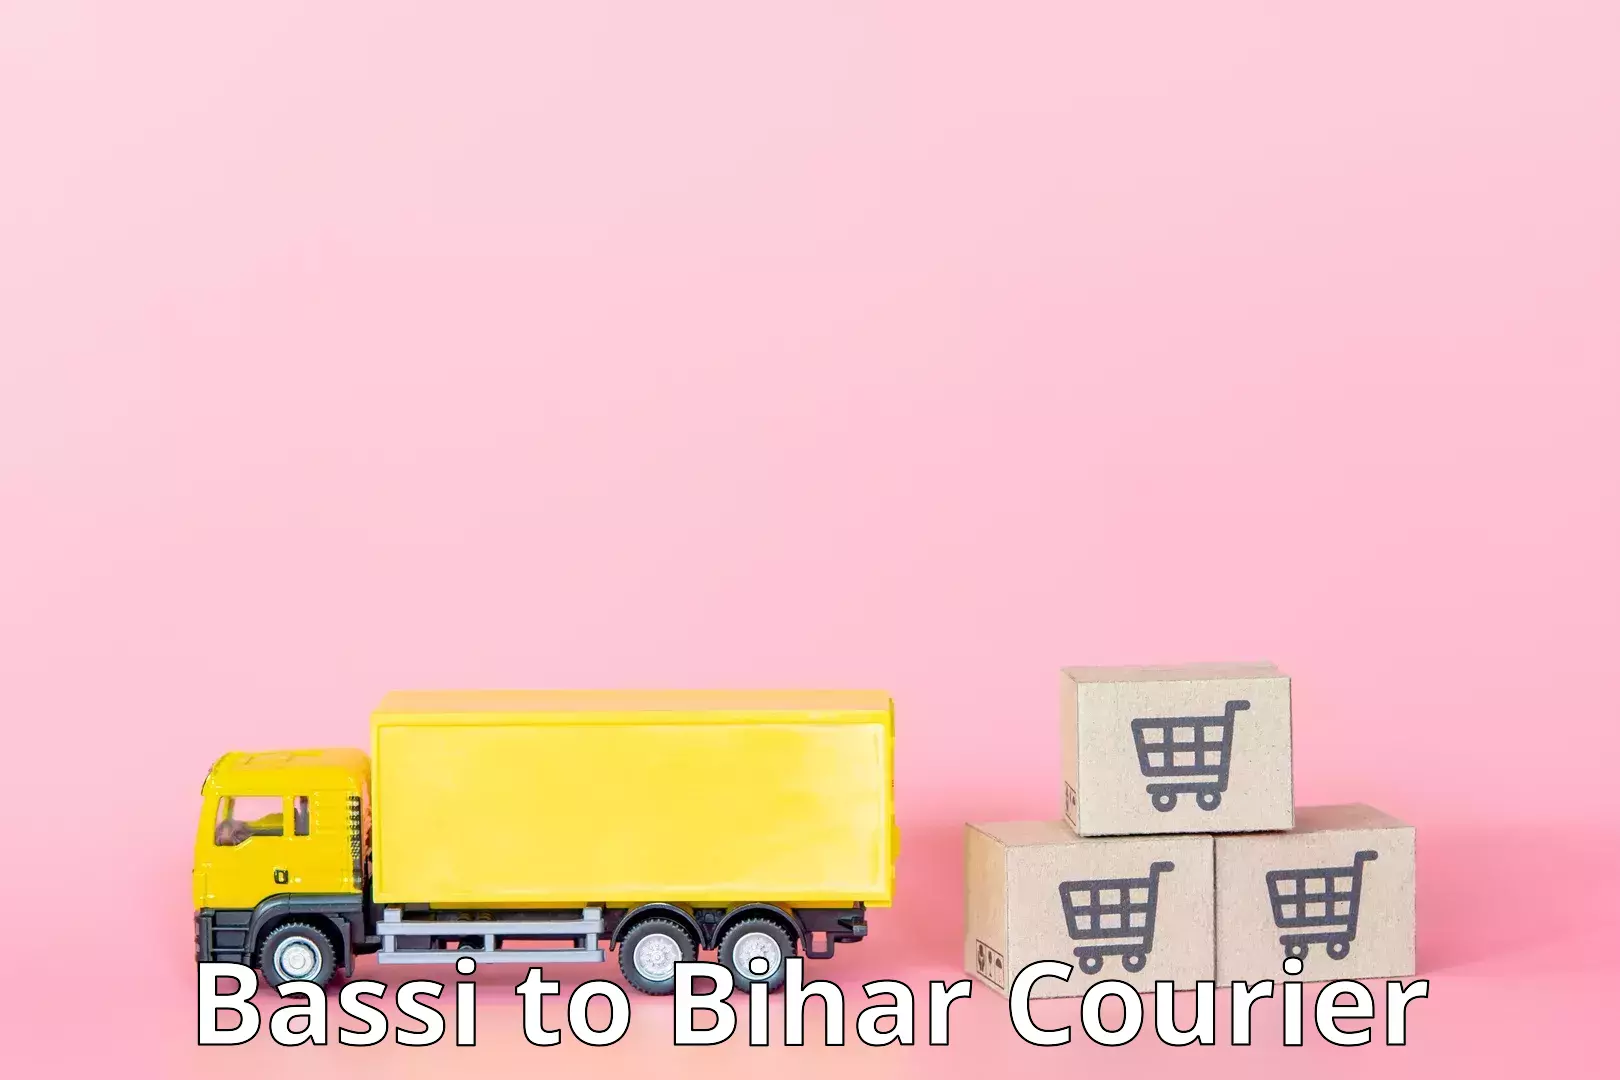 User-friendly delivery service Bassi to Khizarsarai